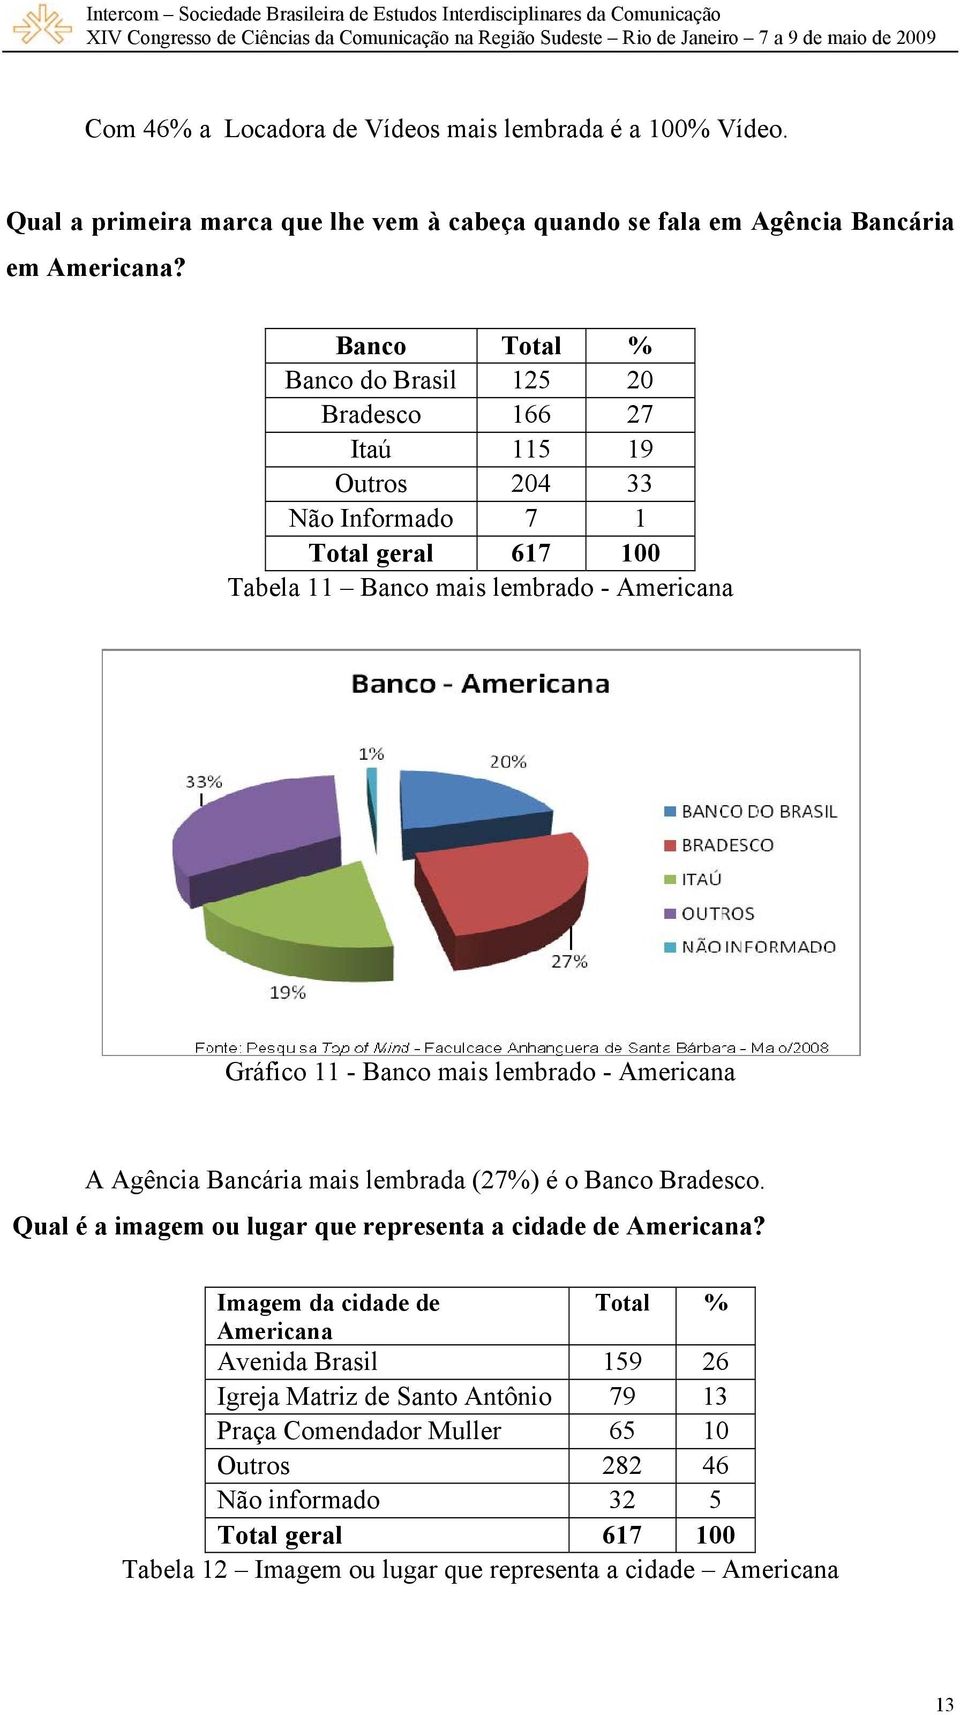 lembrado - Americana A Agência Bancária mais lembrada (27%) é o Banco Bradesco. Qual é a imagem ou lugar que representa a cidade de Americana?